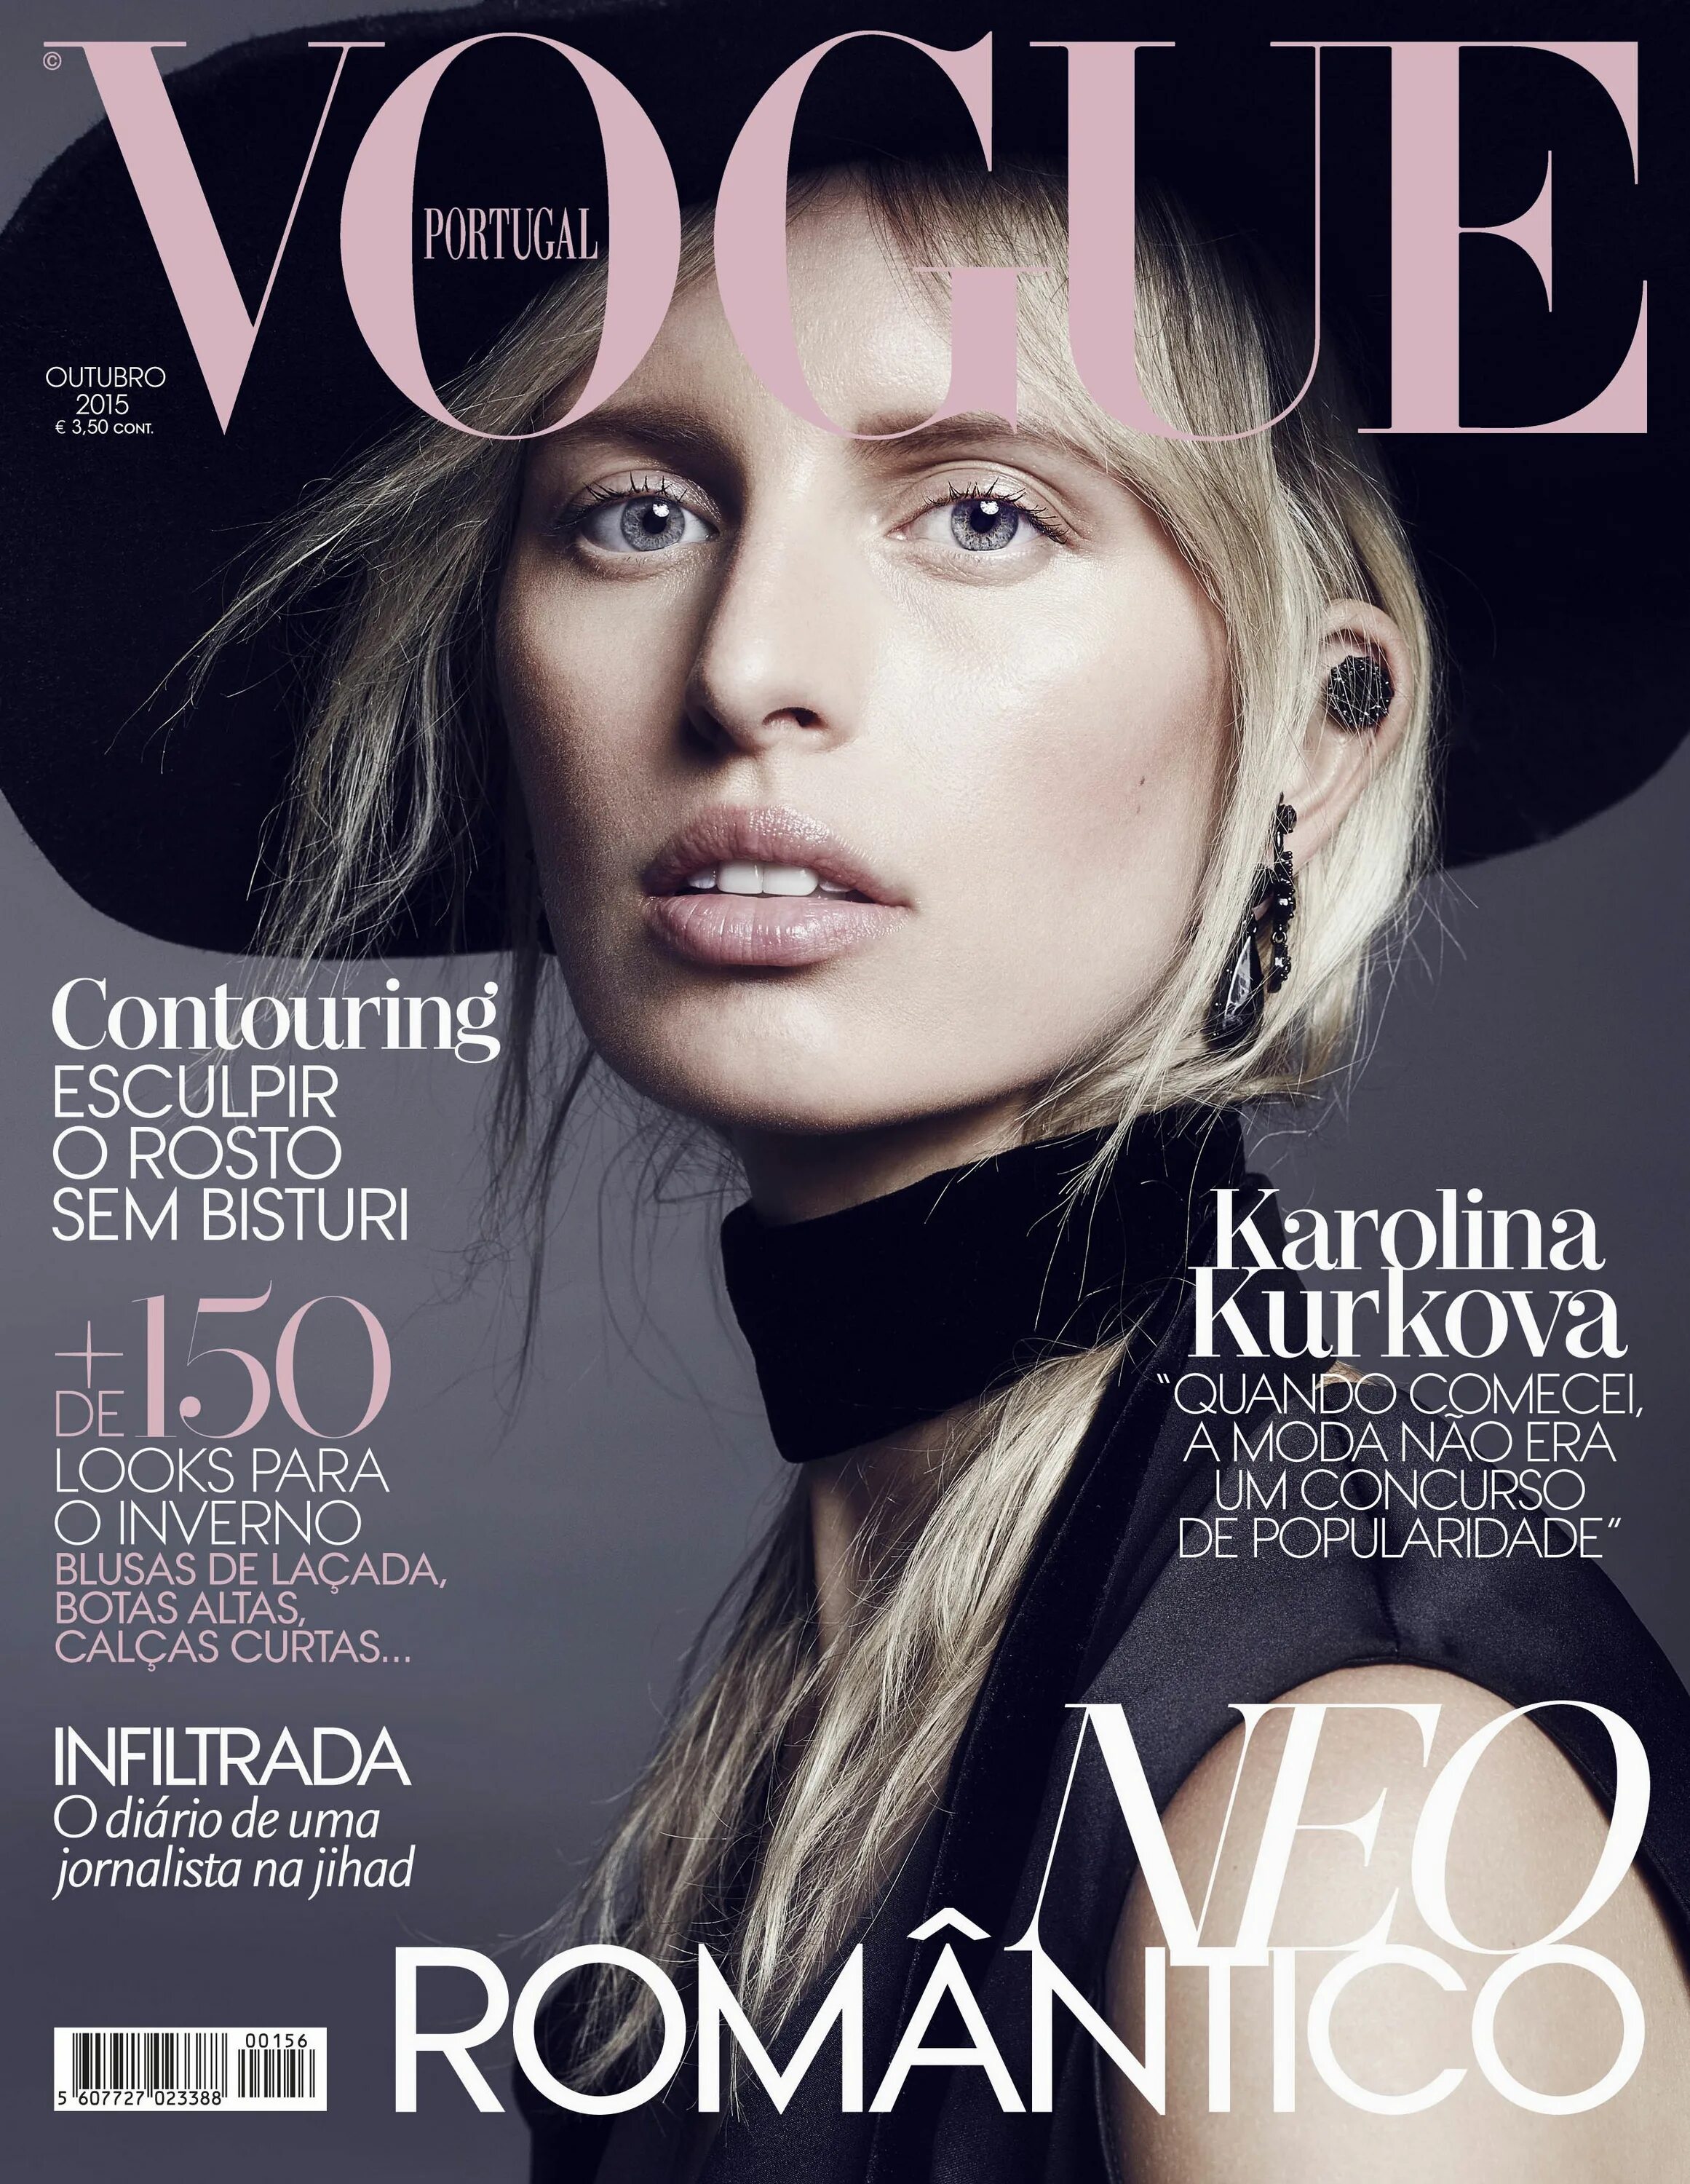 Обложка для журнала. Обложка Vogue. Журнал Vogue.